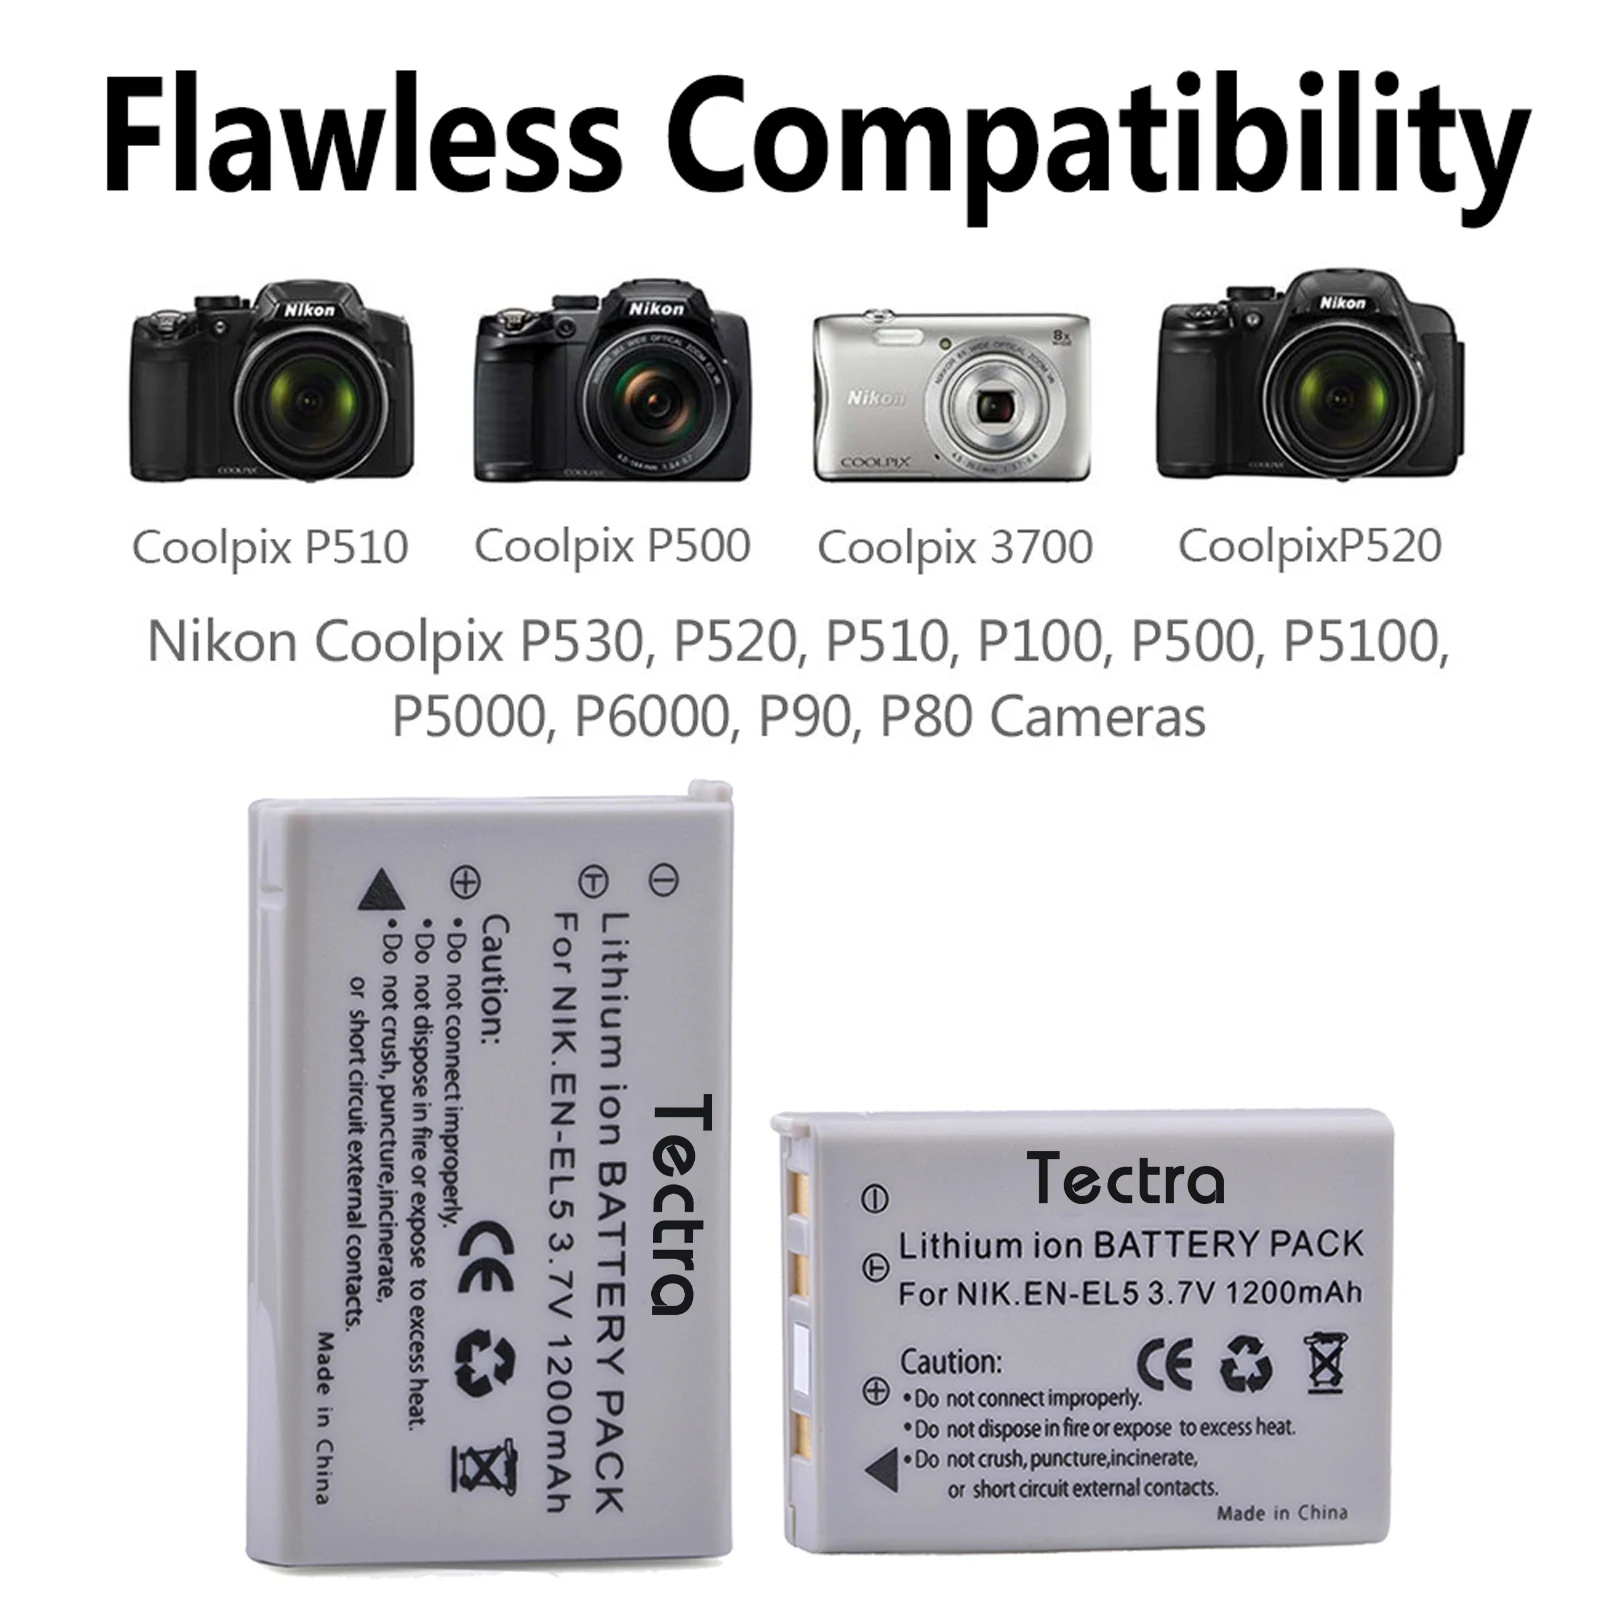 EN-EL5 ENEL5 Camera Battery& LED USB Charger for Nikon Coolpix P530 P520 P510 P100 P500 P5000 P5100 P6000 3700 4200